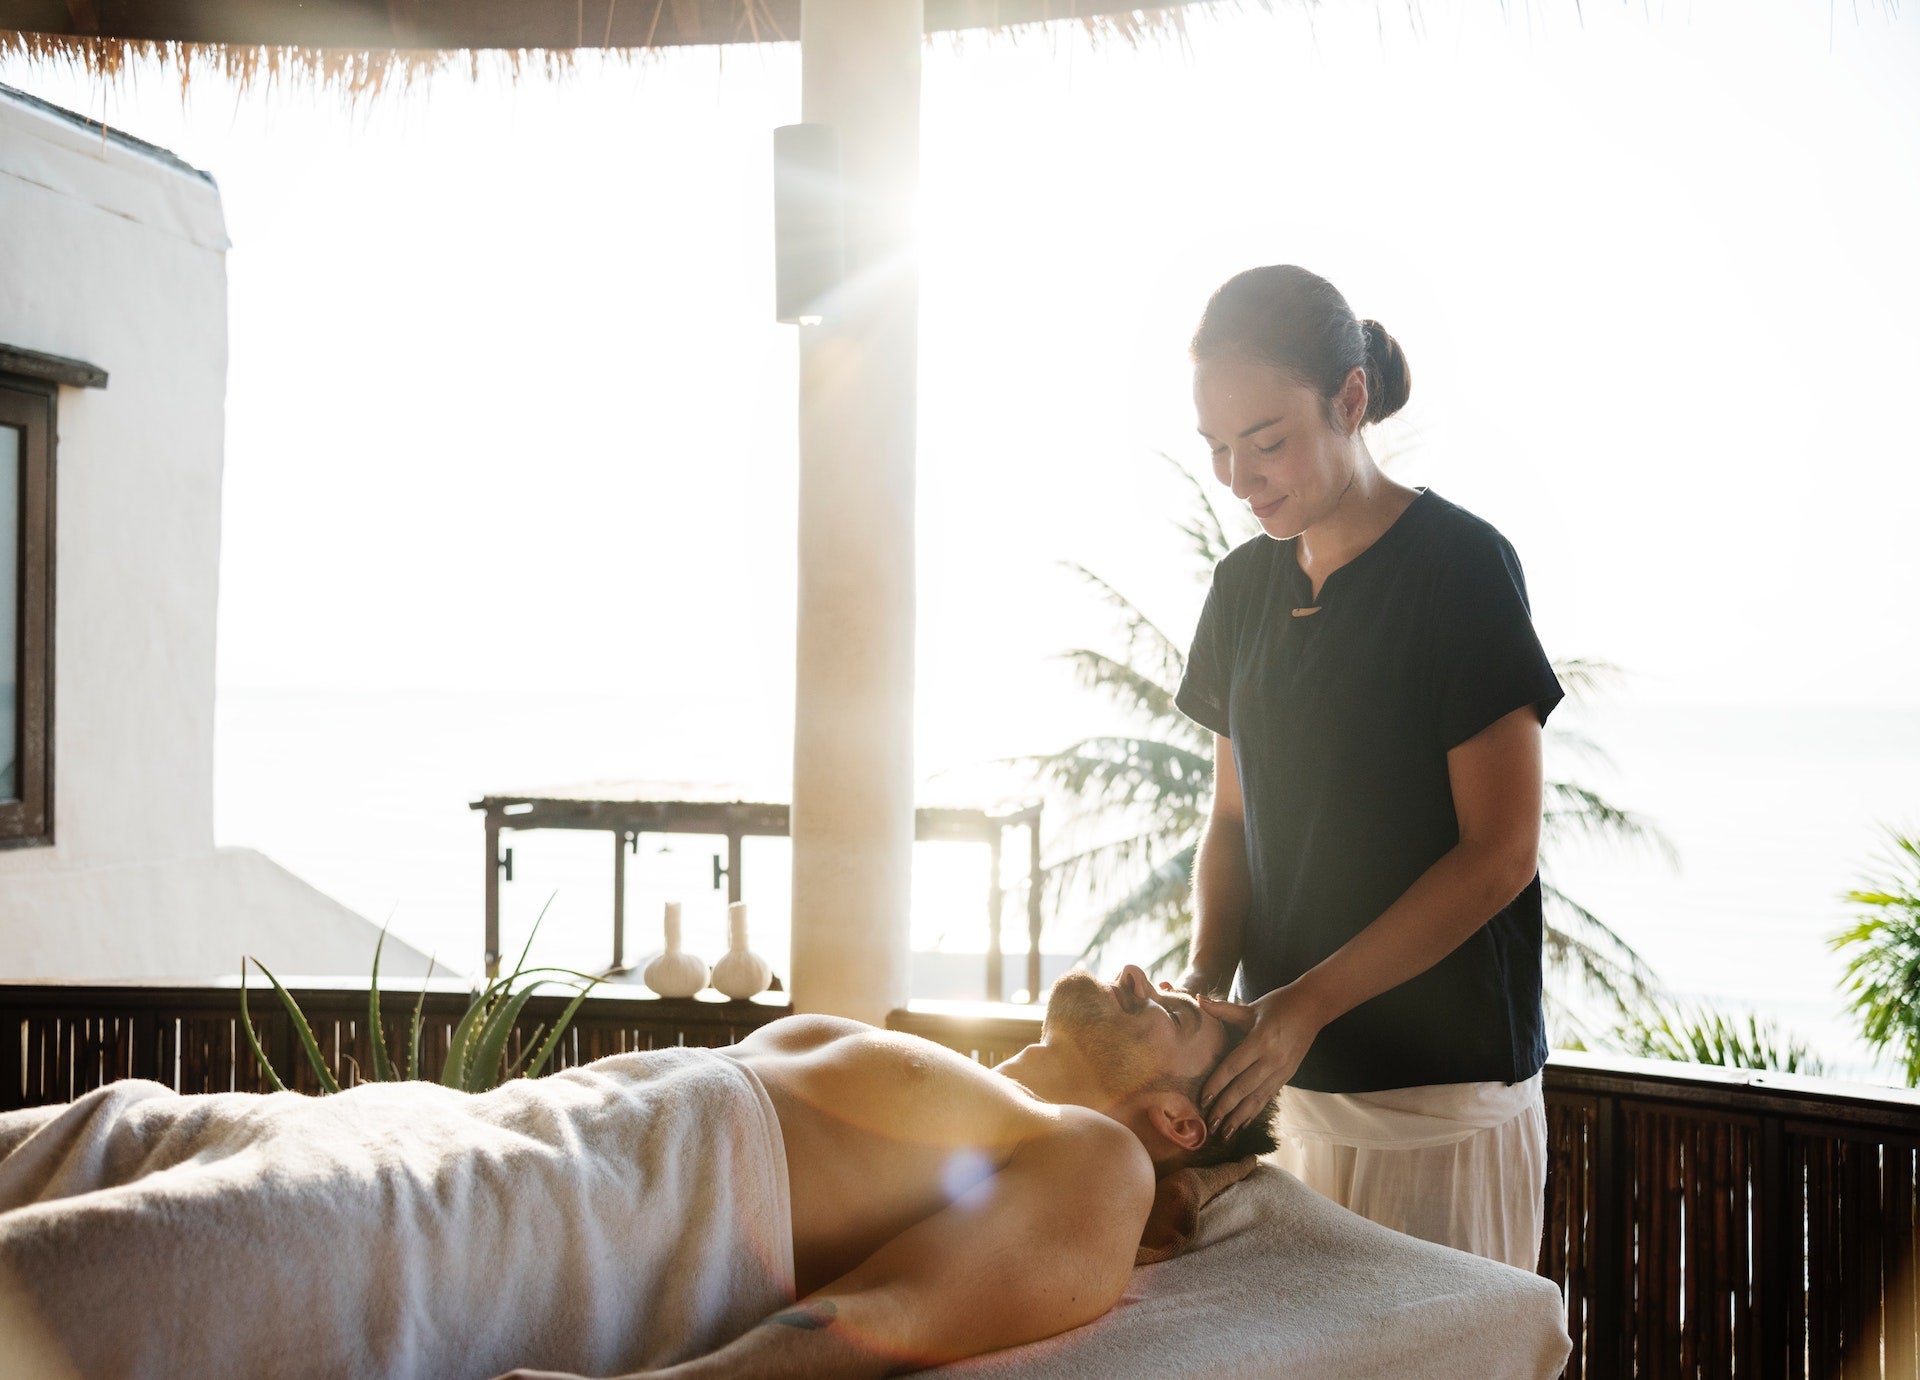 Aromatherapy Massage Benefits